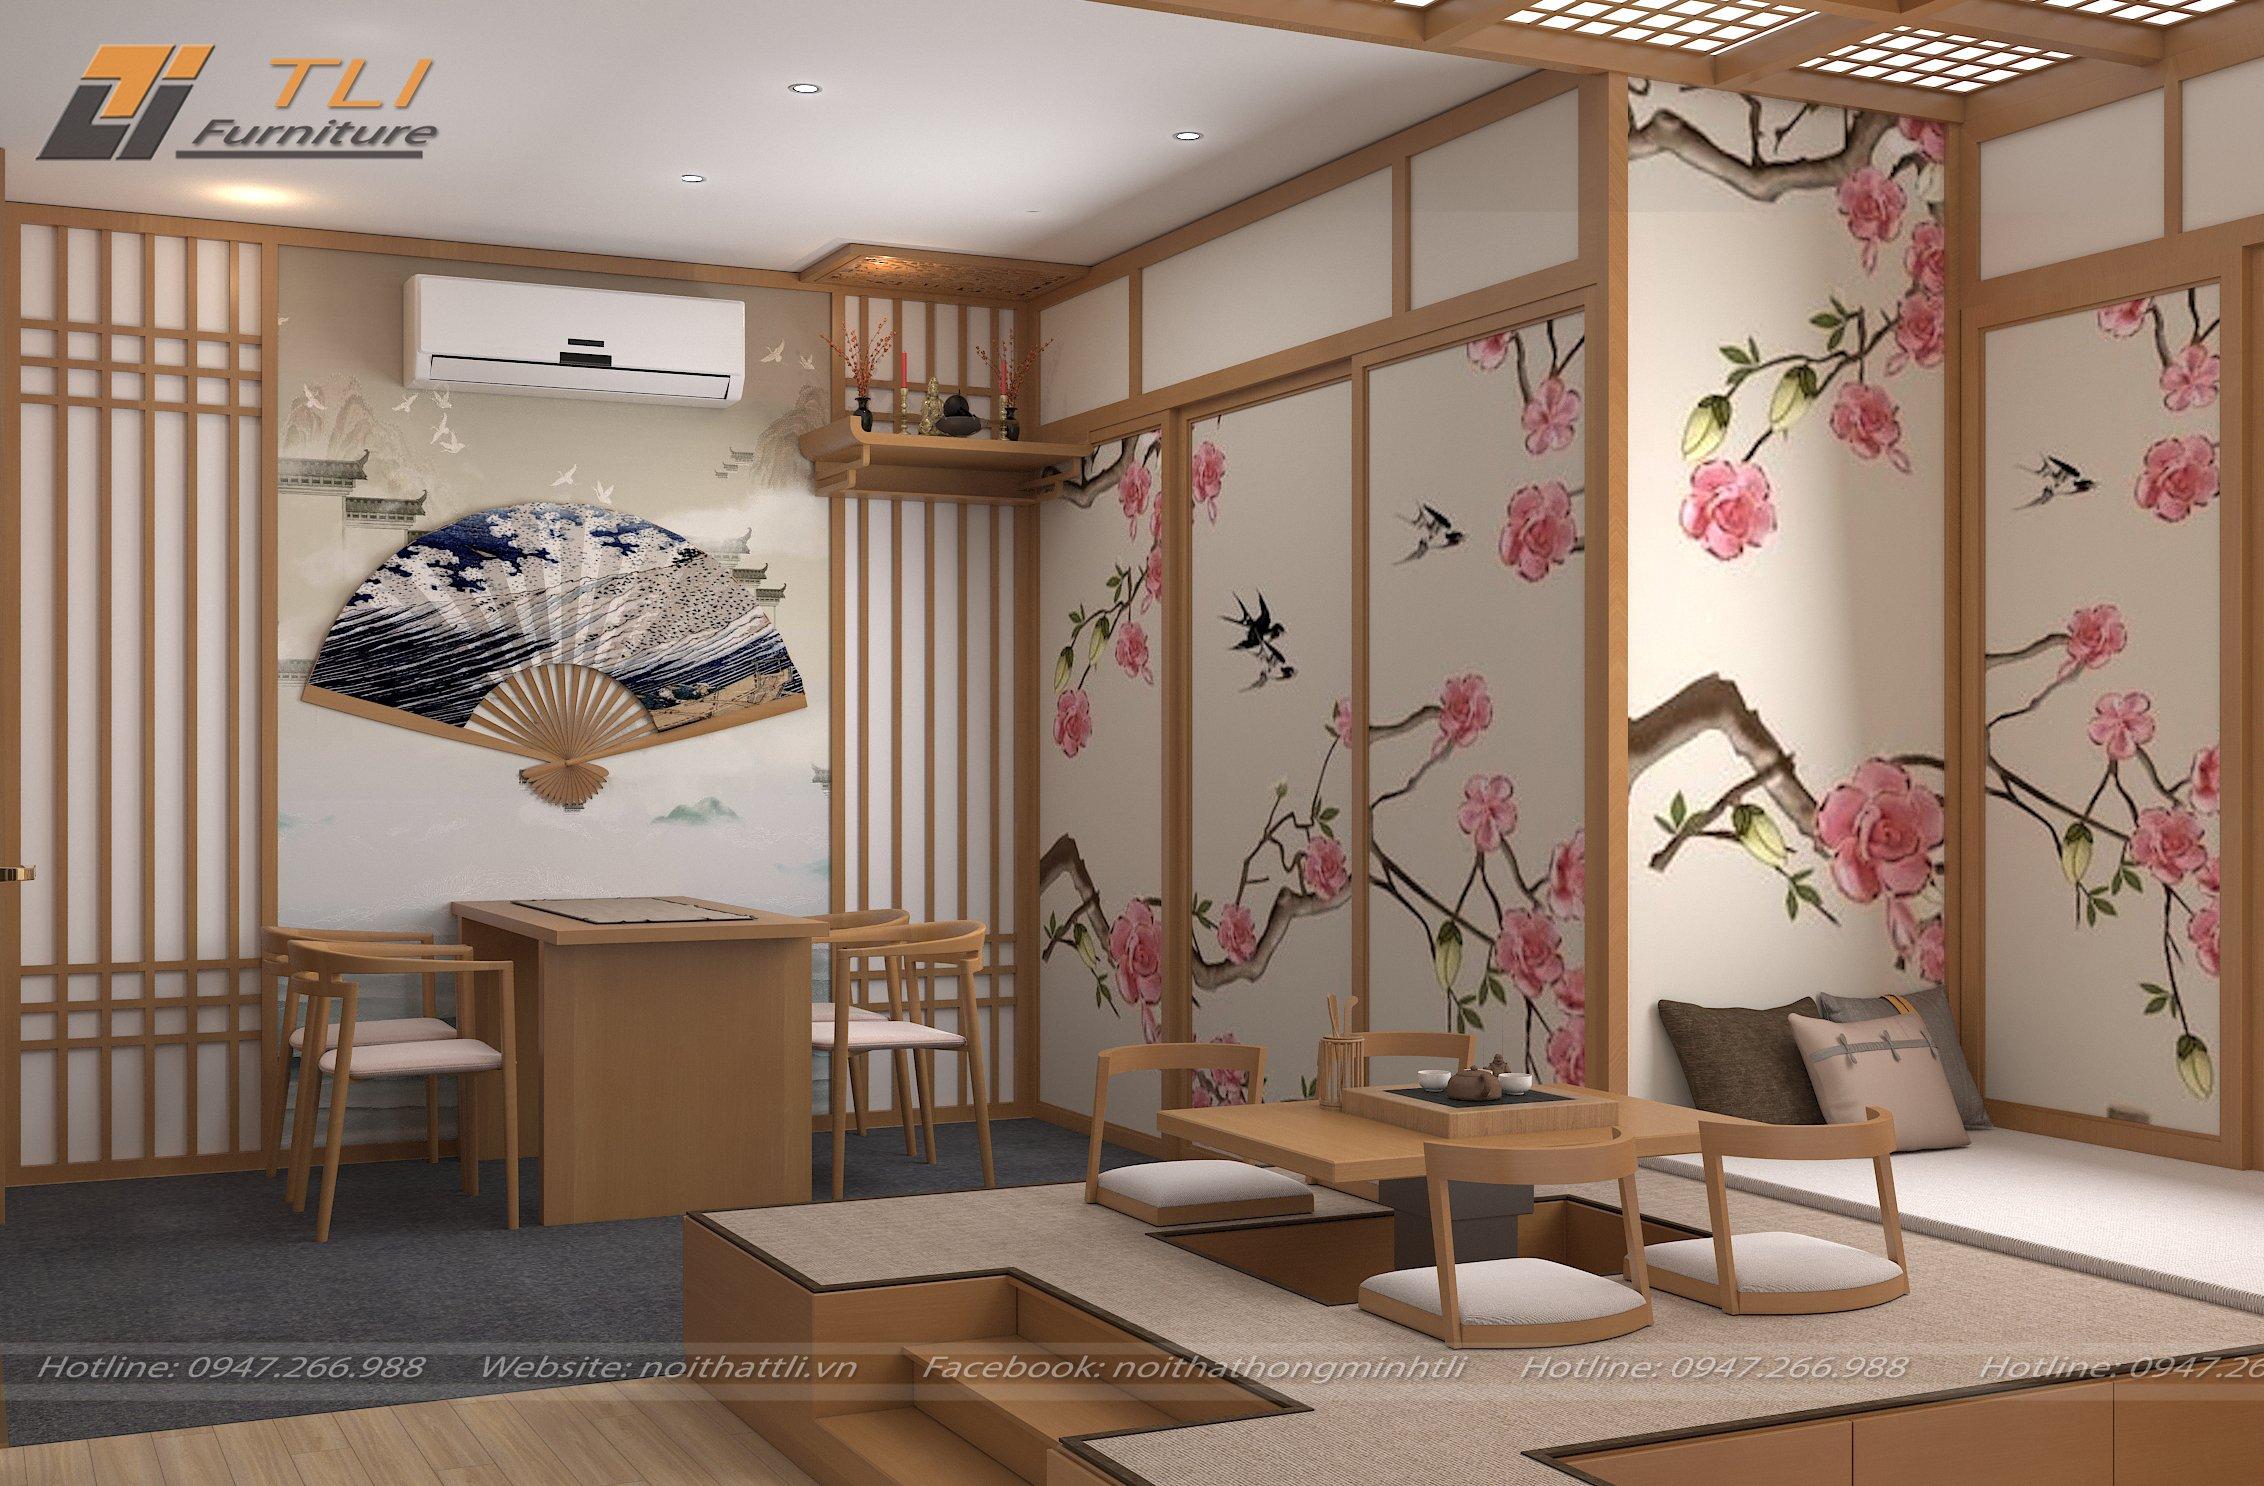 Nếu bạn đang tìm kiếm phong cách thiết kế nội thất Nhật Bản để cải thiện ngôi nhà của mình, thì không nơi nào sánh bằng. Với thiết kế tối giản và sự tôn trọng với tự nhiên, không gian sống của bạn sẽ trở nên thanh lịch và hài hòa. Bất kể bạn là người yêu thích phong cách hiện đại hay truyền thống, Nhật Bản có thể đáp ứng mọi nhu cầu.